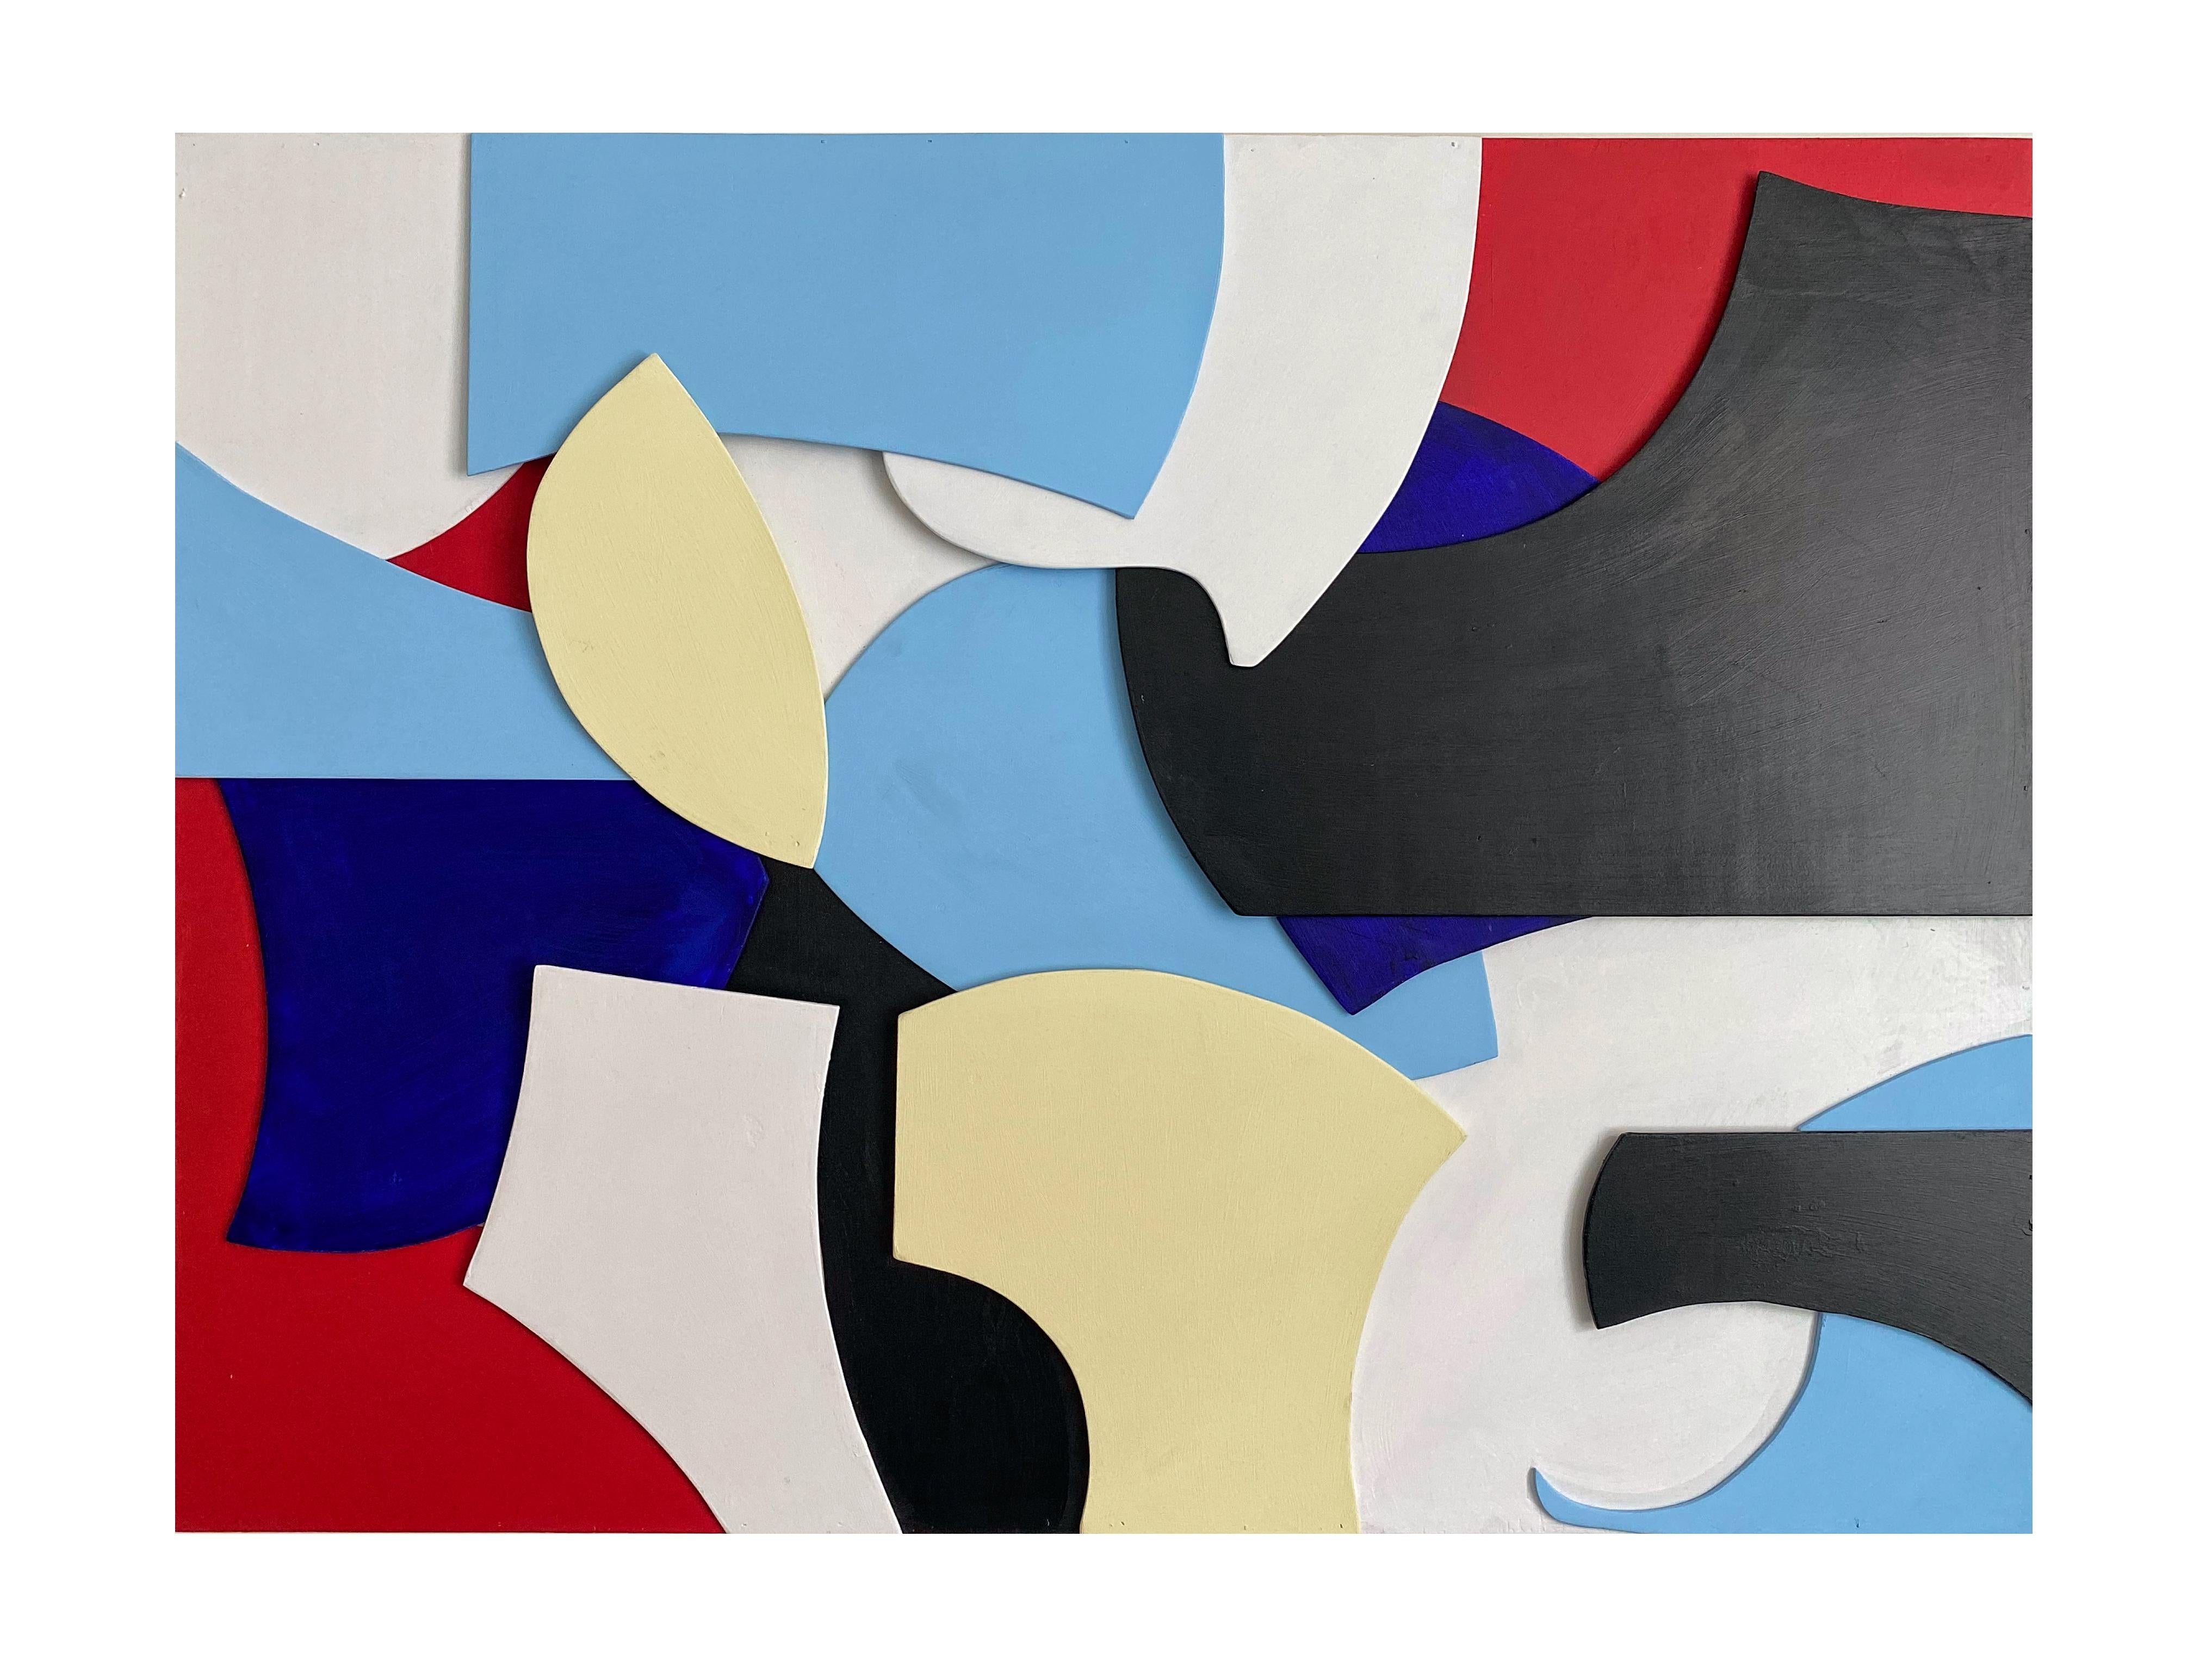 GS06, Geometrische abstrakte mehrfarbige 3D-Wandskulptur in Mischtechnik (Geometrische Abstraktion), Mixed Media Art, von Zach Touchon